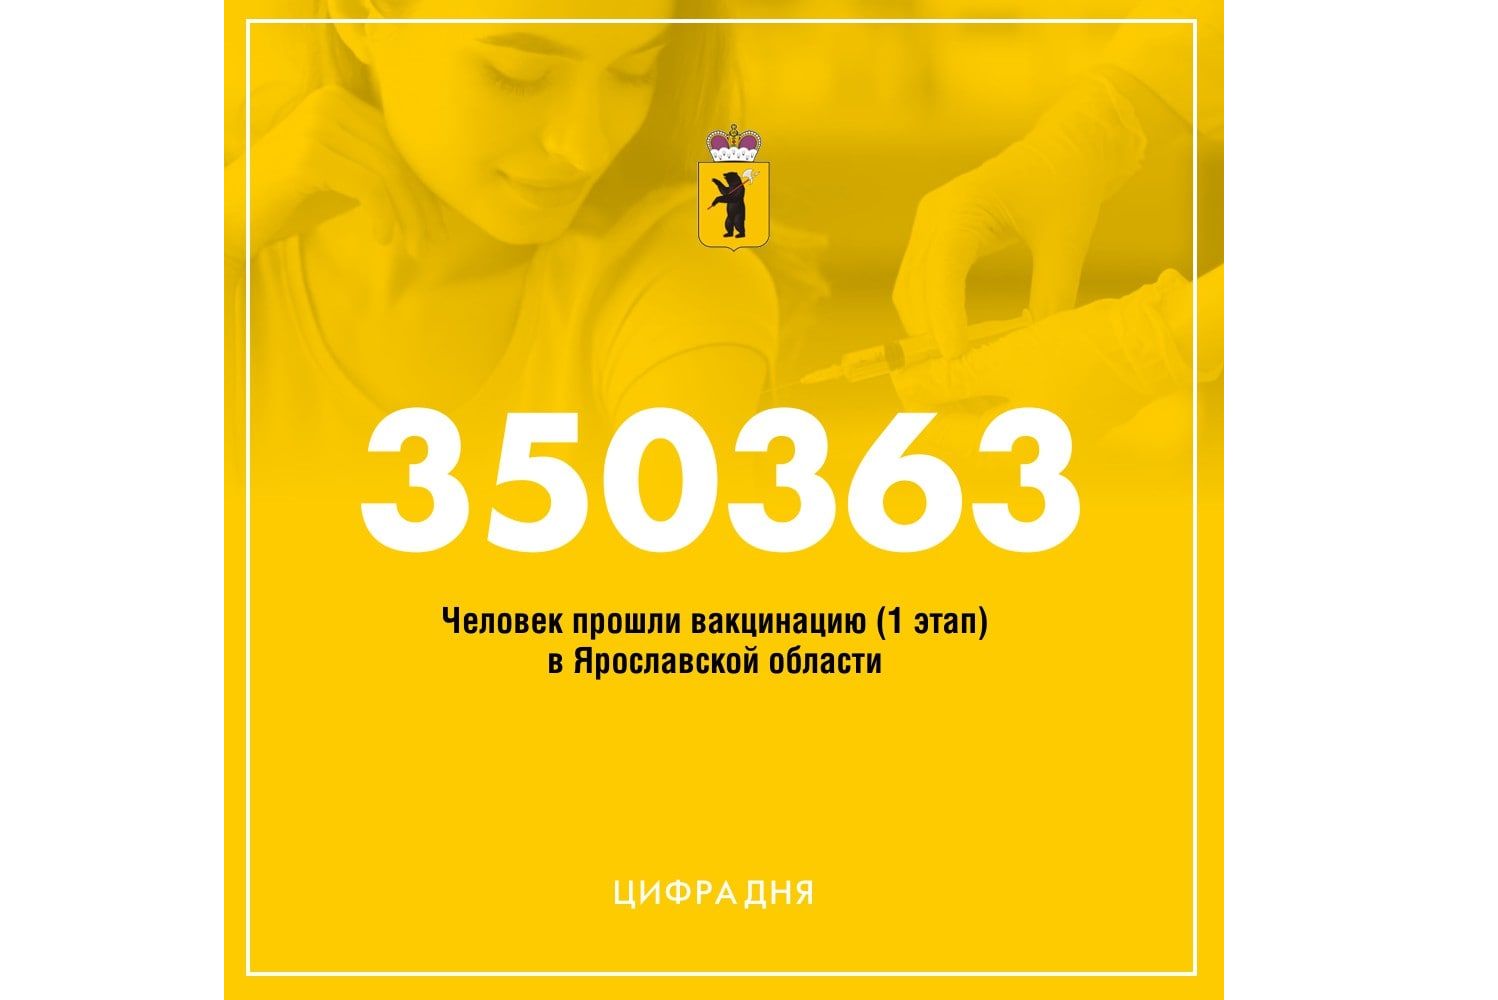 В Ярославской области вакцинировались от коронавируса больше 350 тысяч человек